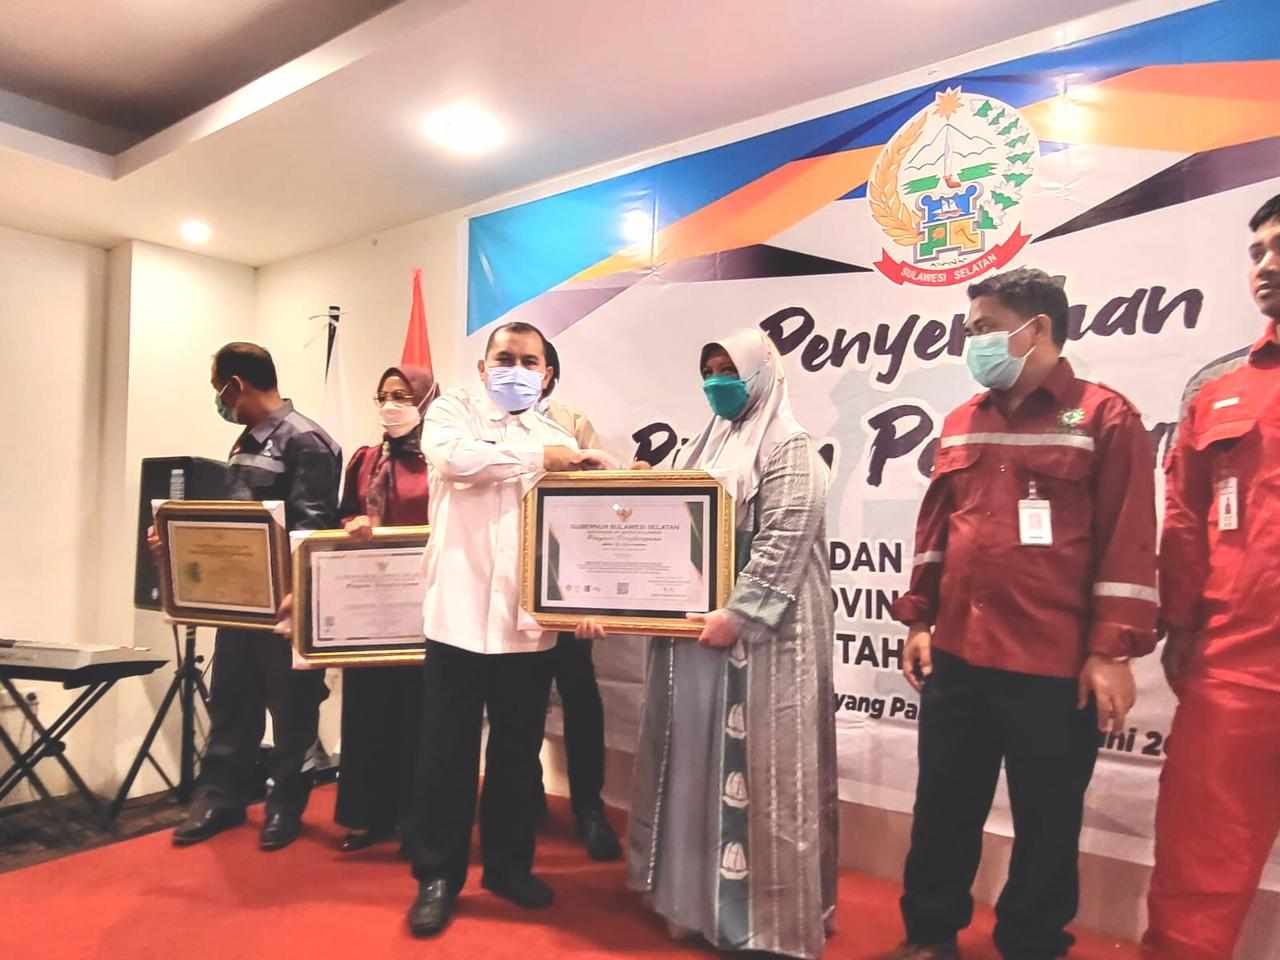 Ketua STIK Makassar Terima 2 Penghargaan dari Pemprov Sulsel